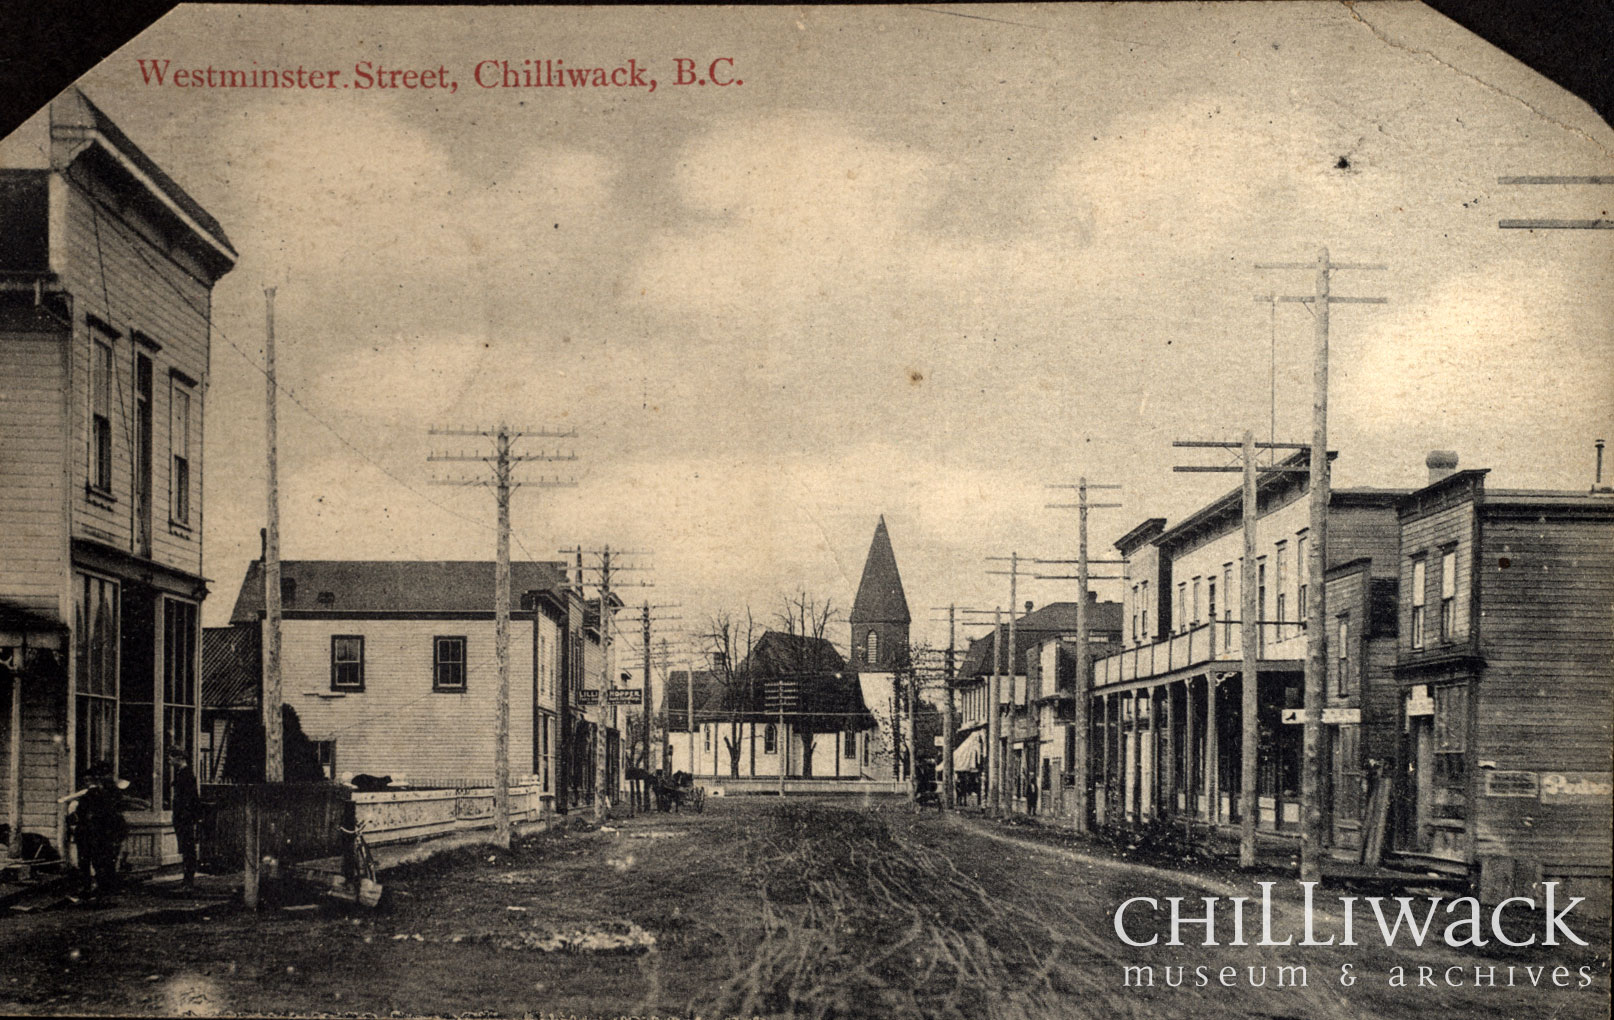 Carte postale en noir et blanc de la rue Westminster, à Chilliwack, en Colombie-Britannique. La rue est composée d’édifices à étage avec une église en arrière-plan